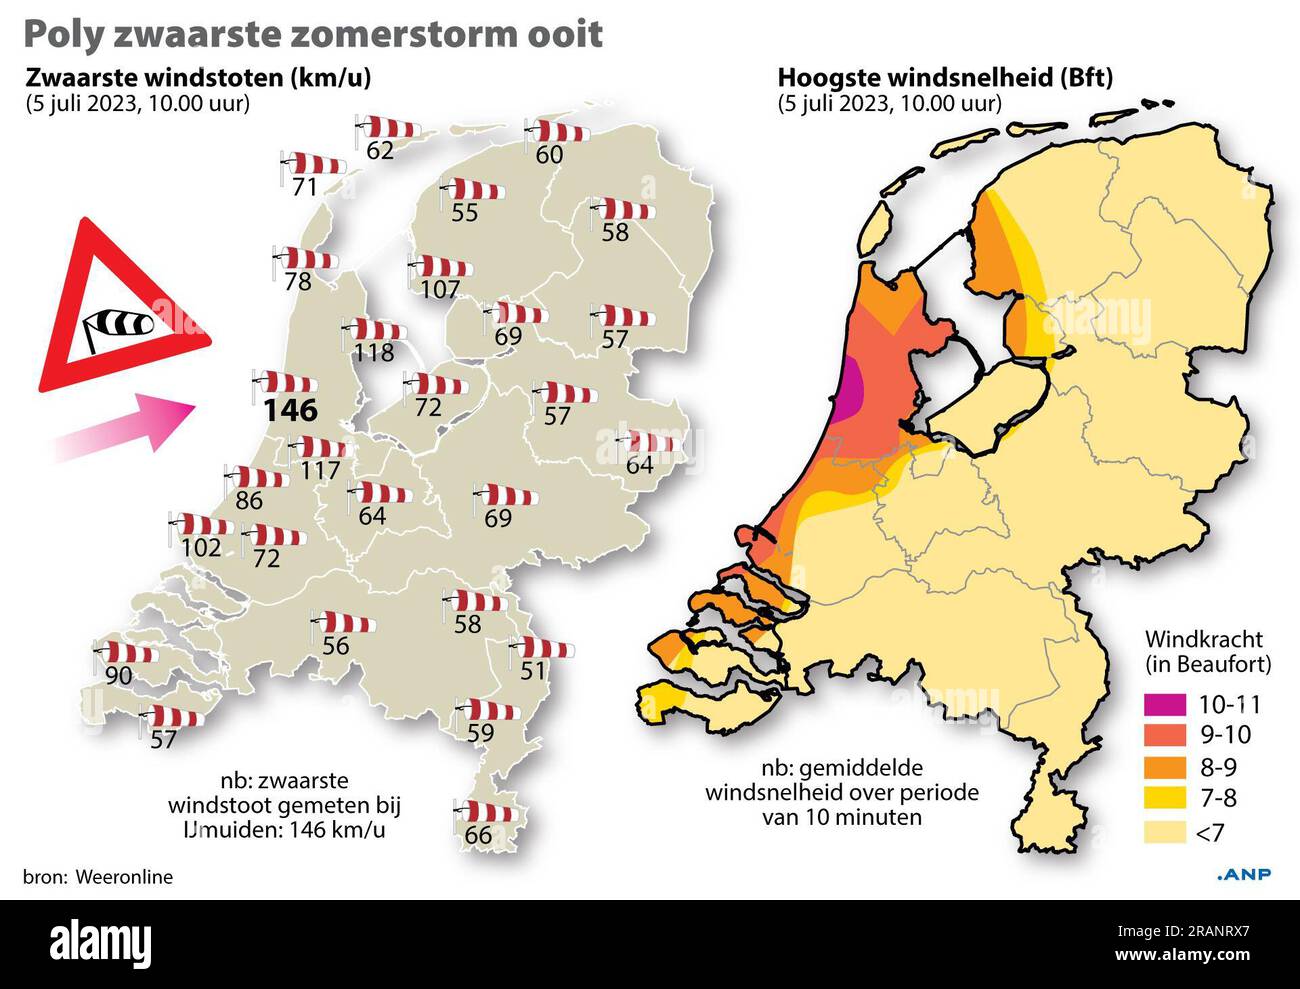 Der schwerste Sommersturm aller Zeiten. Übersicht über die schwersten Windböen und die höchste windgeschwindigkeit über den Niederlanden. Situation am 5. Juli, 10 Uhr ANP-INFOGRAFIKEN niederlande raus - belgien raus Stockfoto